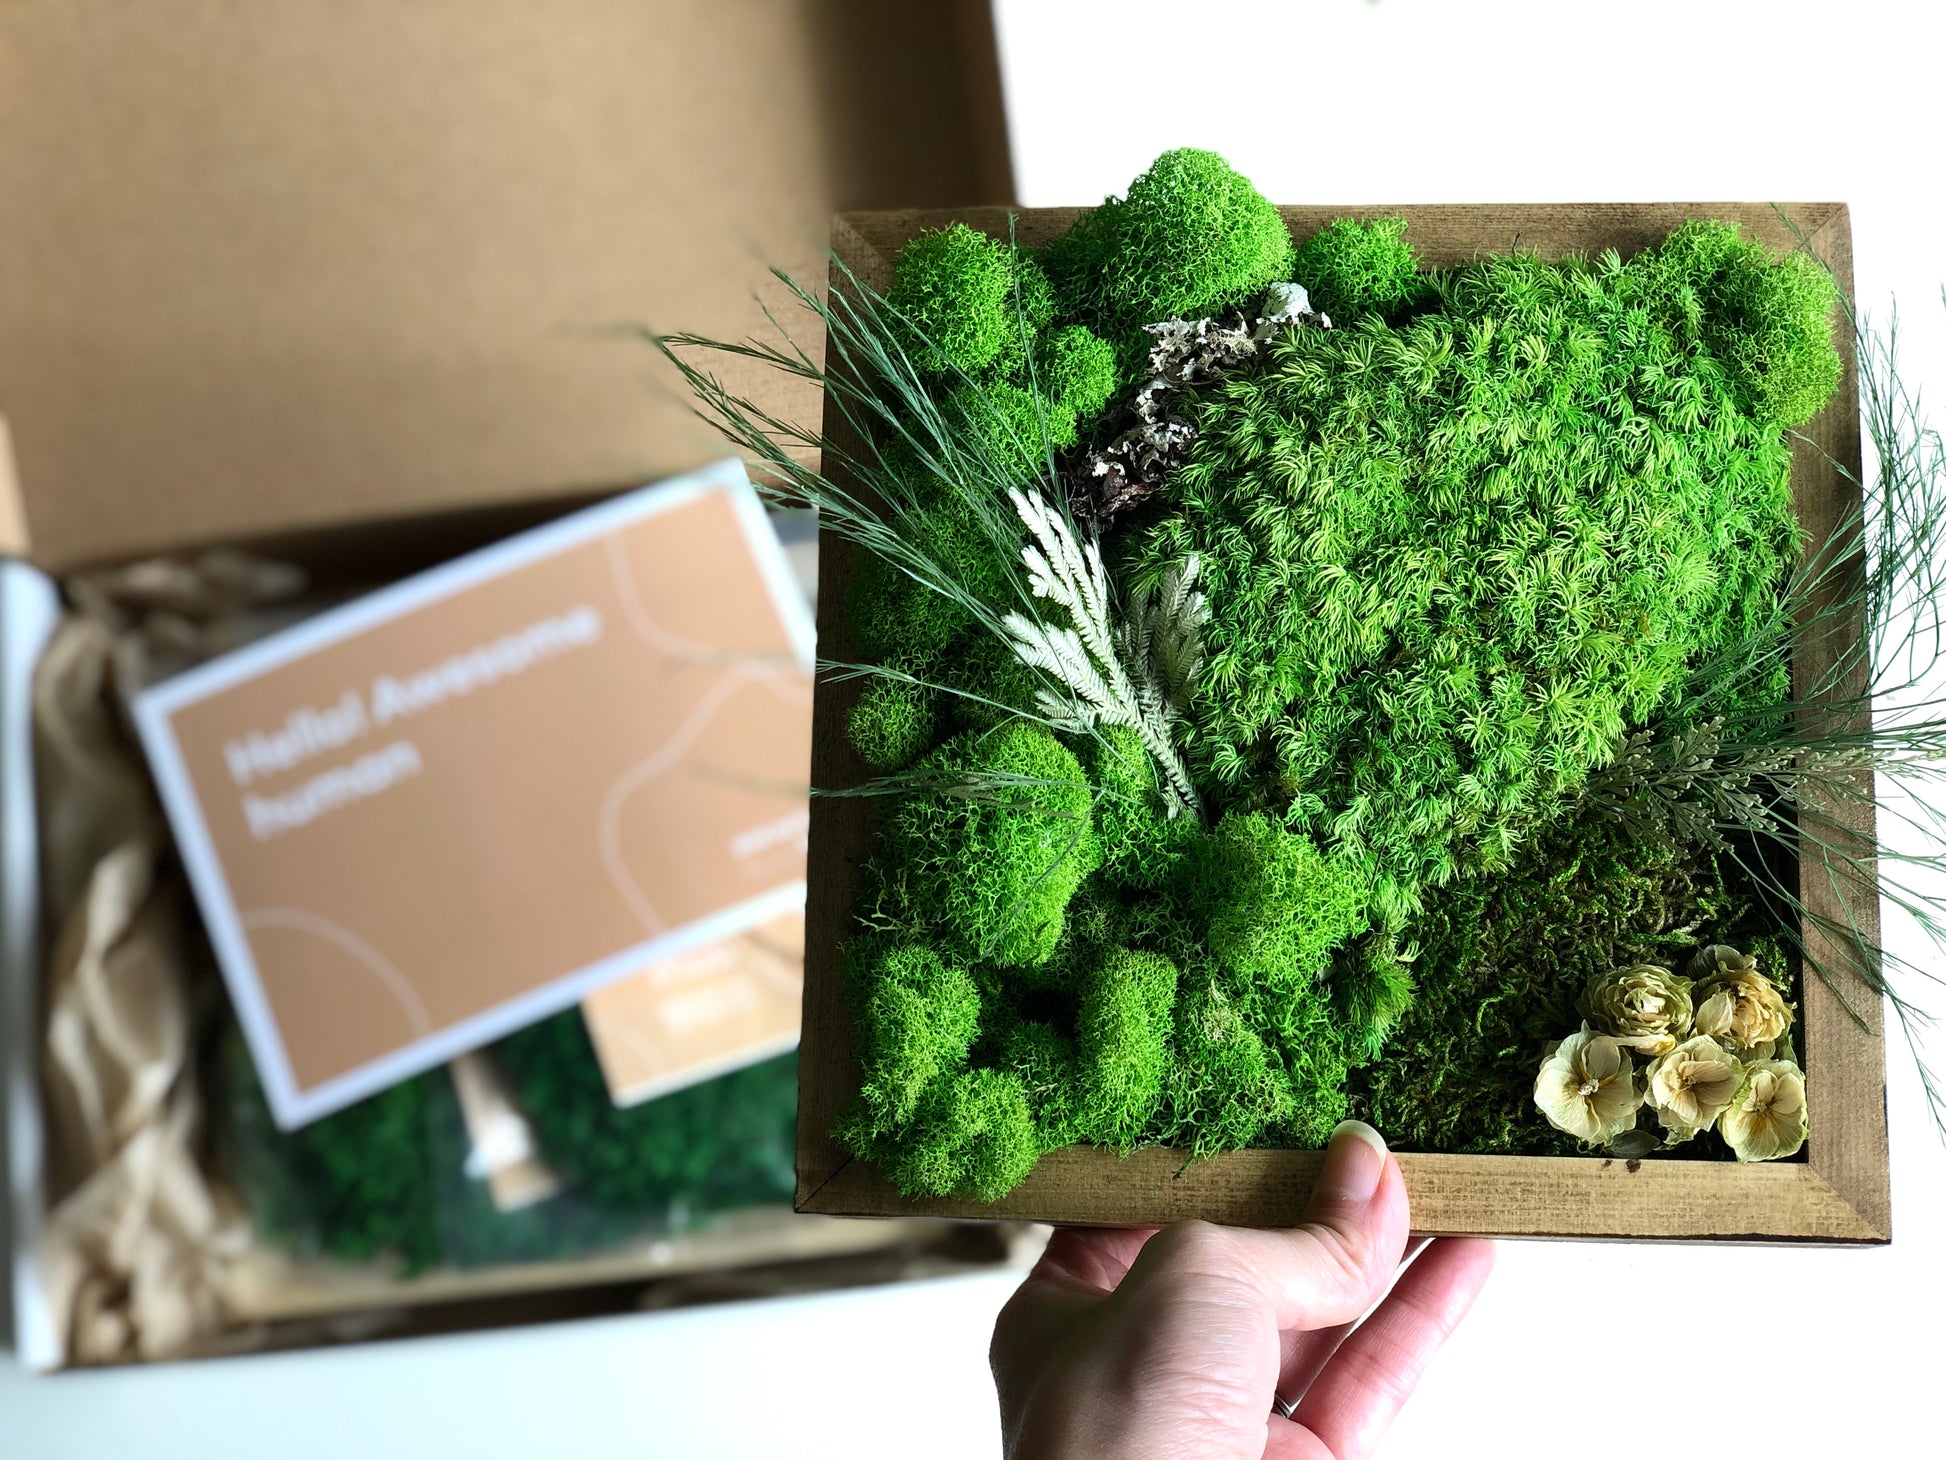 Preserved Moss Velvet - box - Green – Si-nature